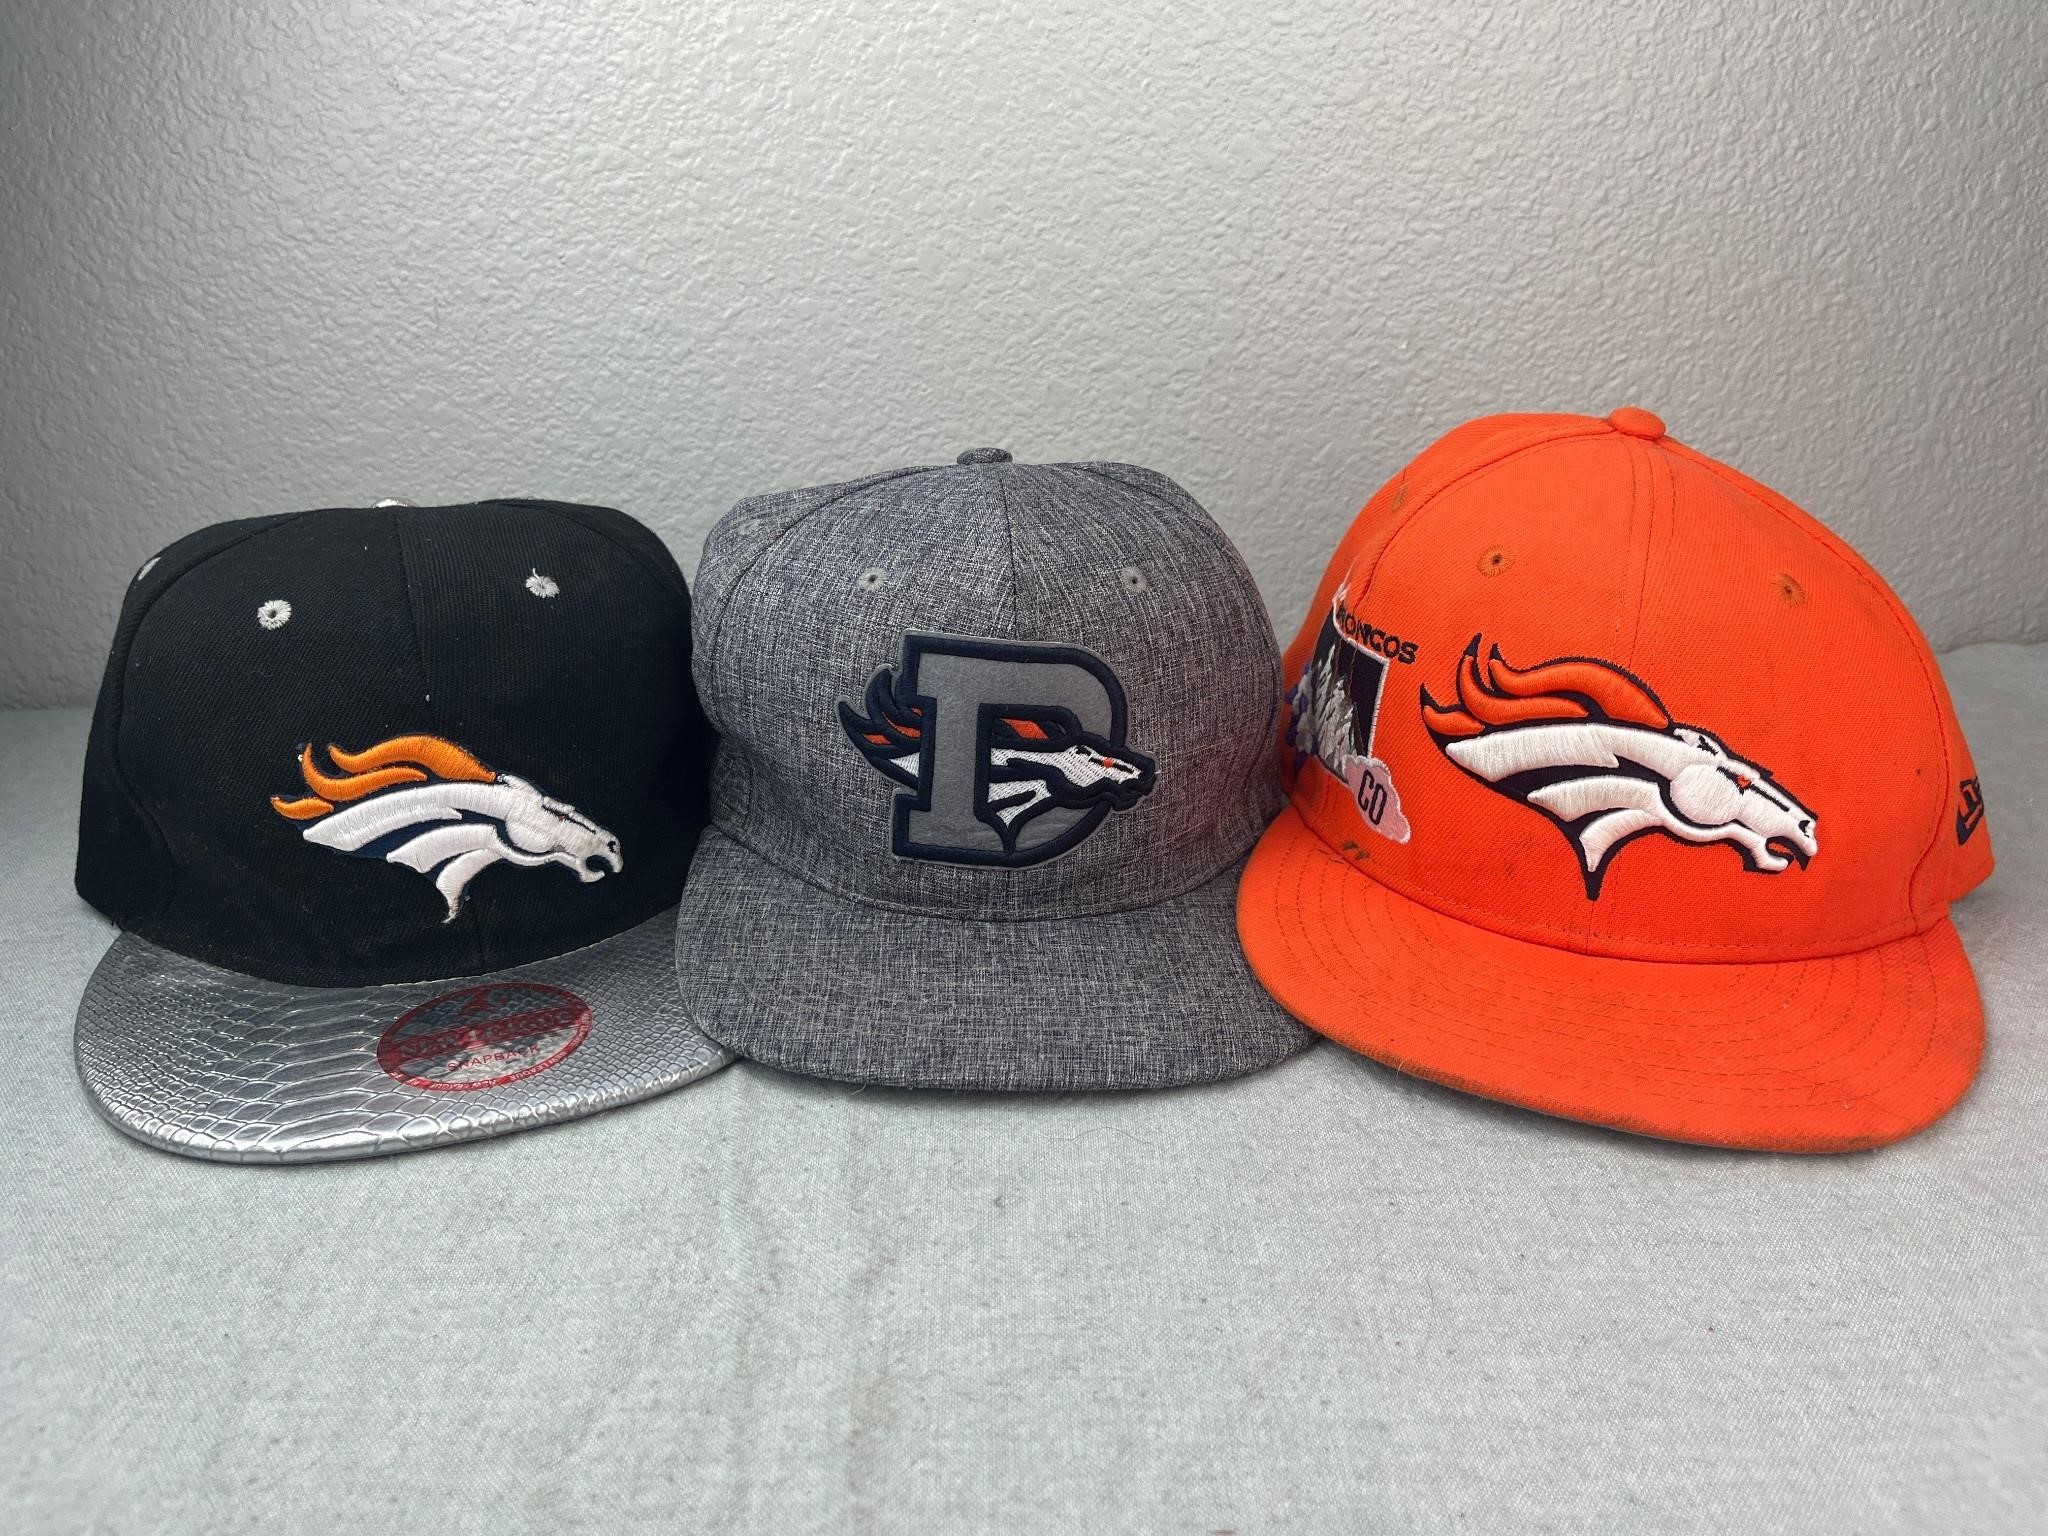 Lot of 3 NFL Denver Broncos FlatBill SnapBack Hats